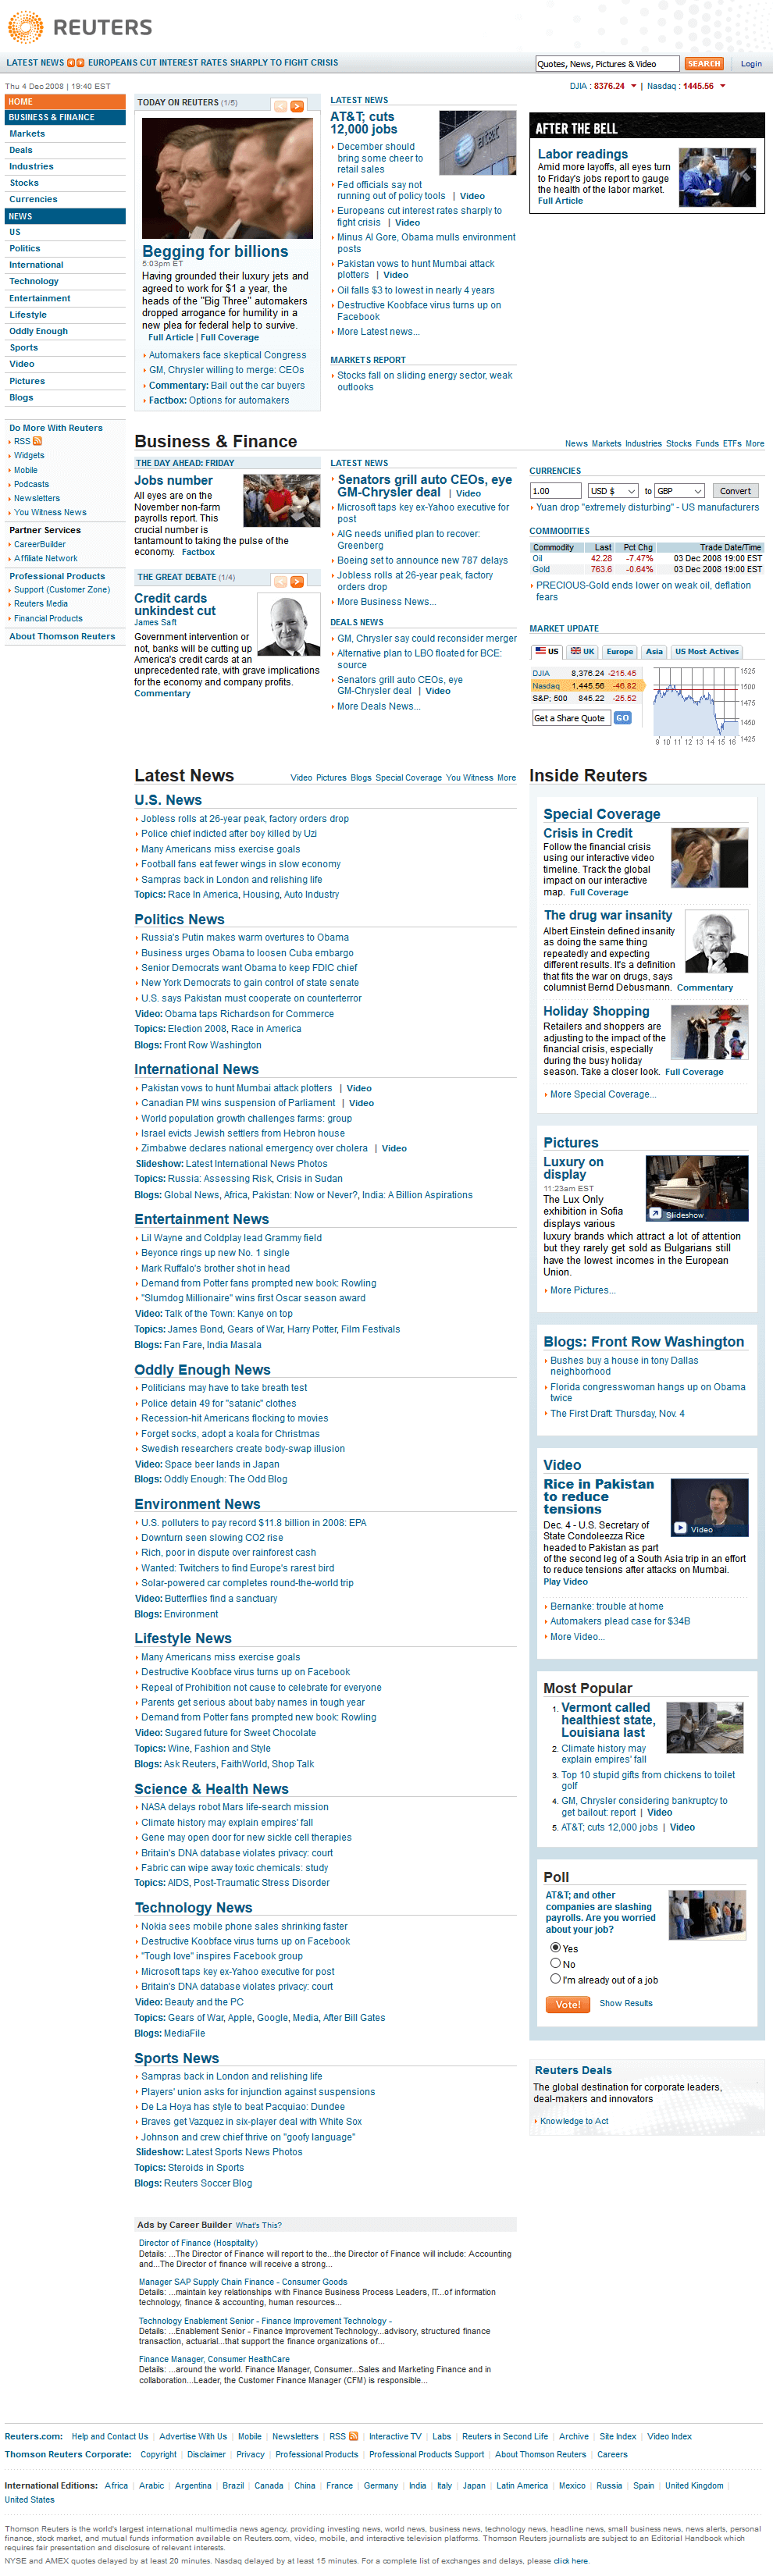 Reuters website in 2008